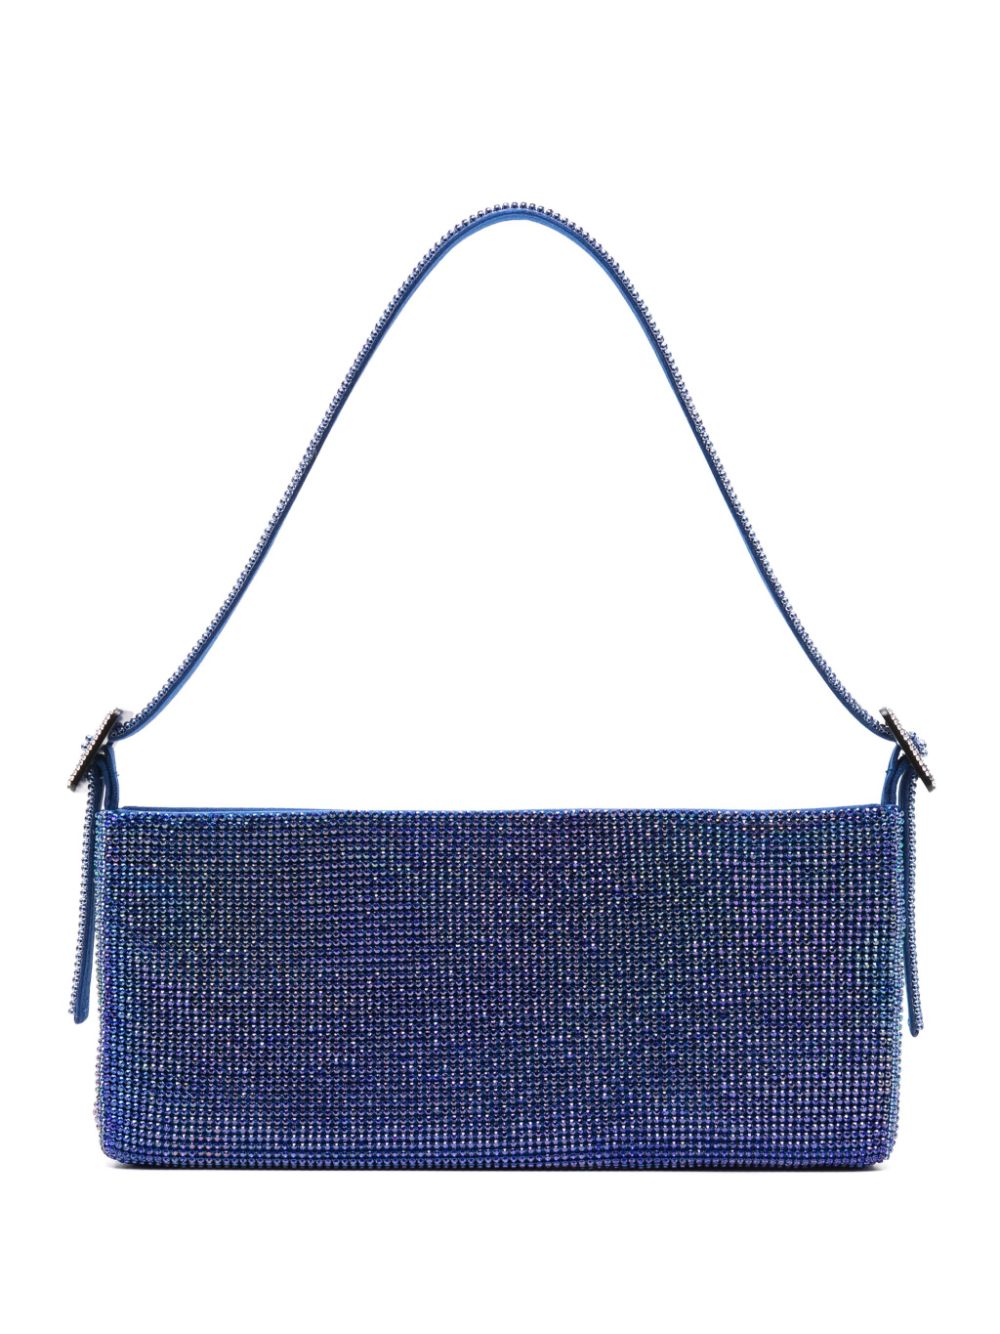 Benedetta Bruzziches BENEDETTA BRUZZICHES- Your Best Friend La Grande Crystal-embellished Handbag